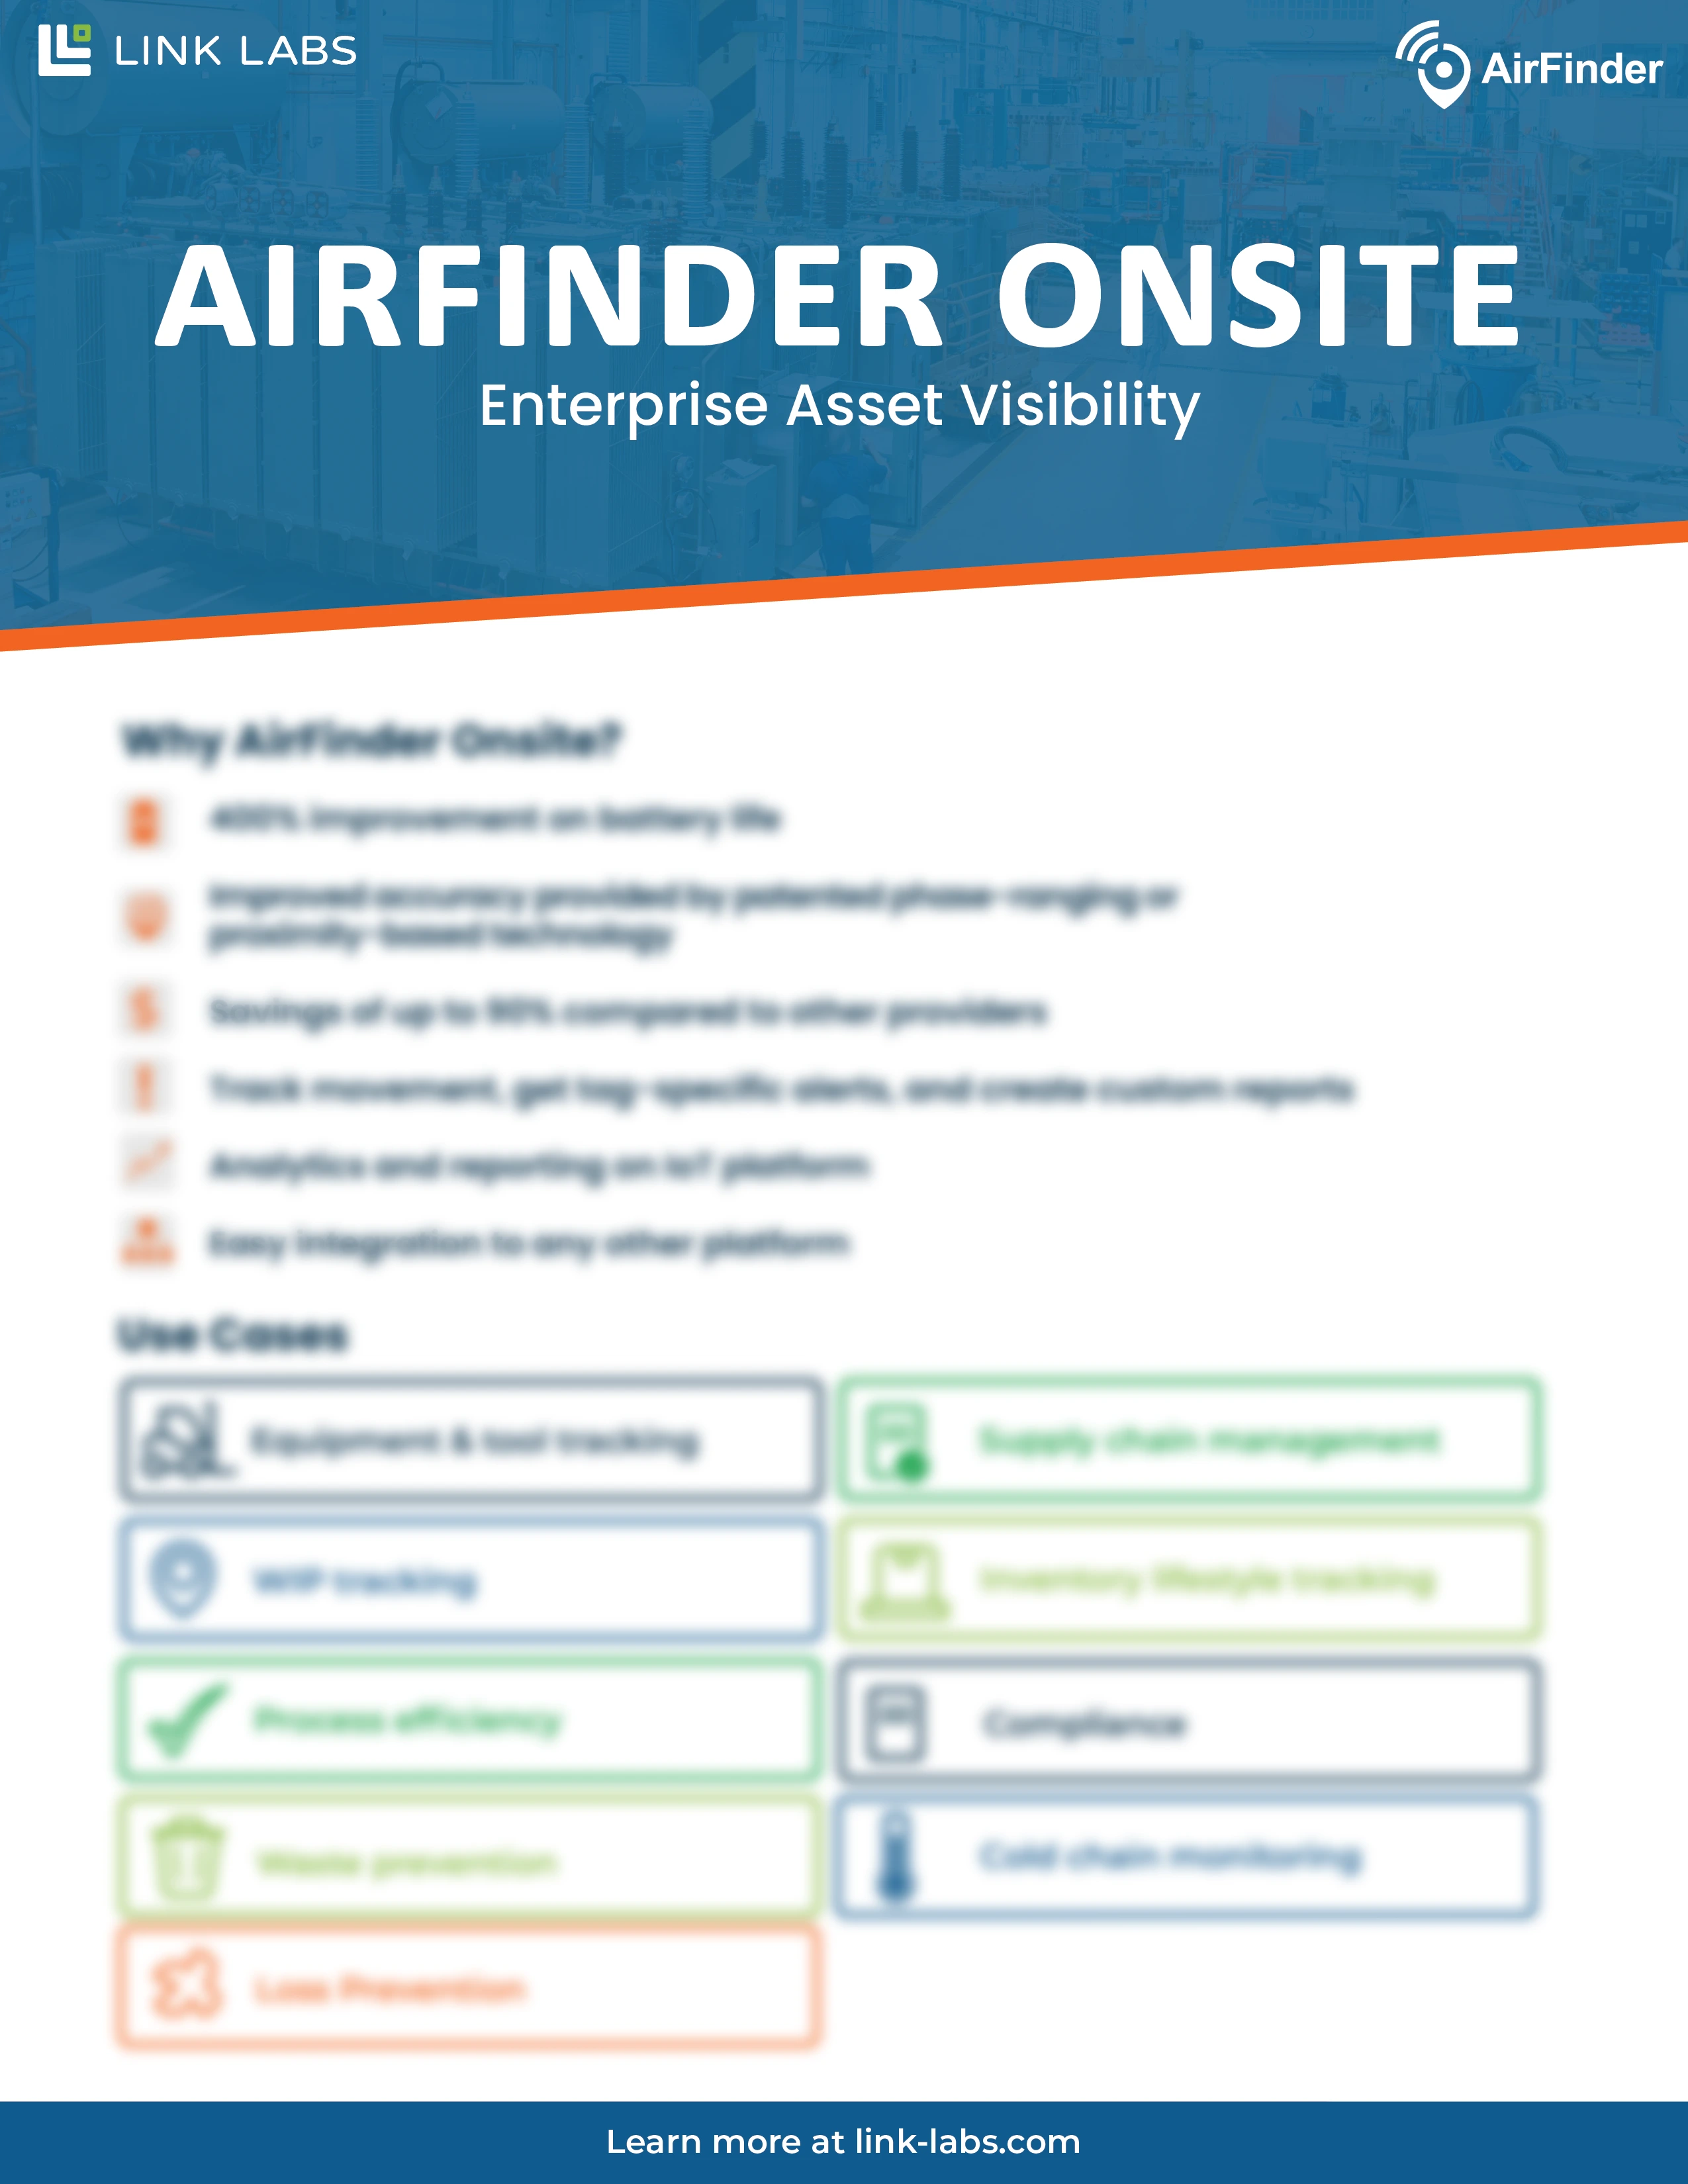 AirFinder OnSite